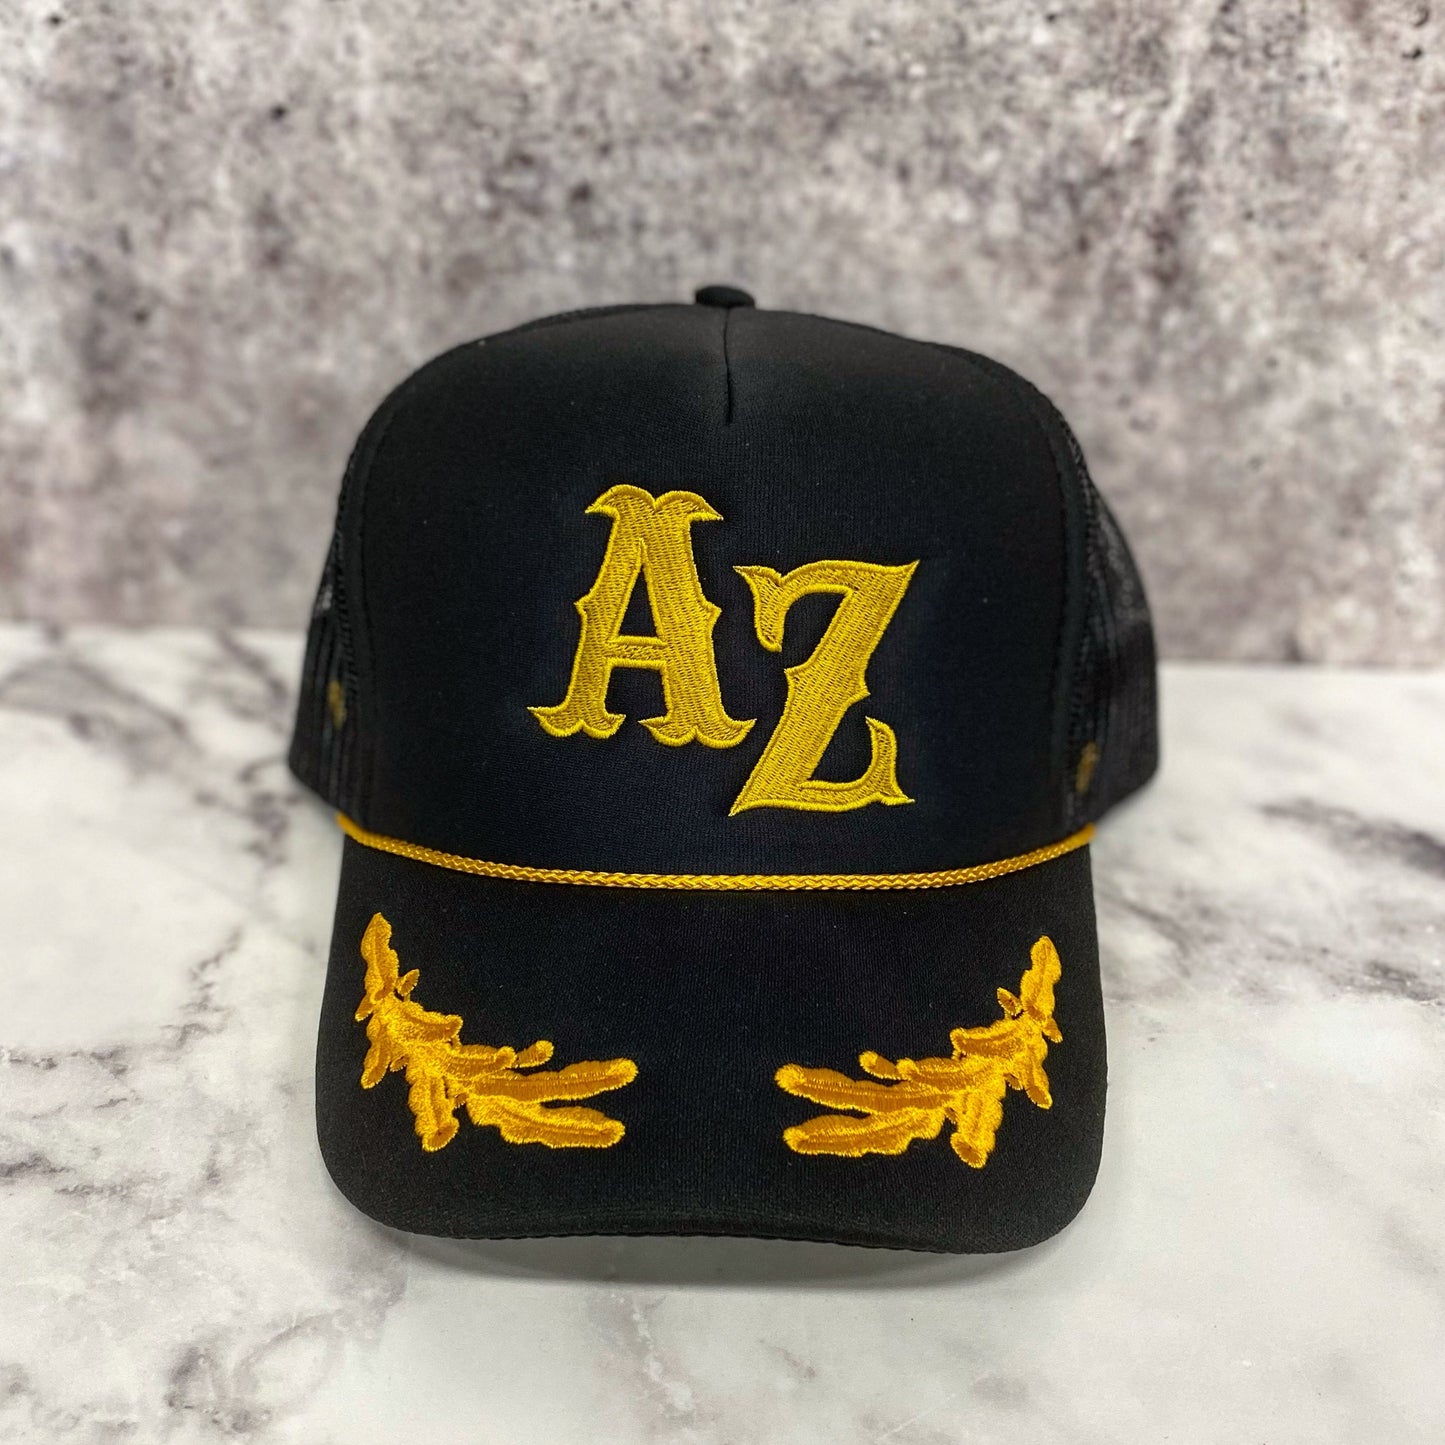 Embroidered AZ Trucker hat